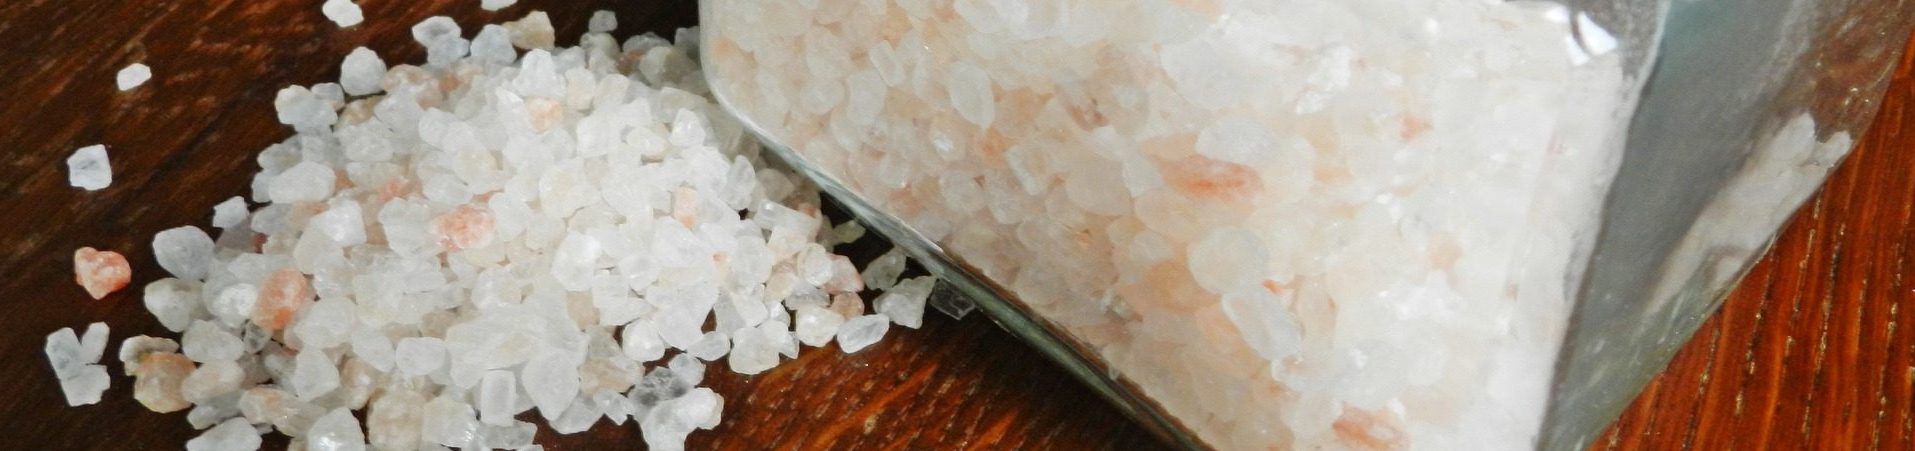 Плюсы и минусы потребления соли